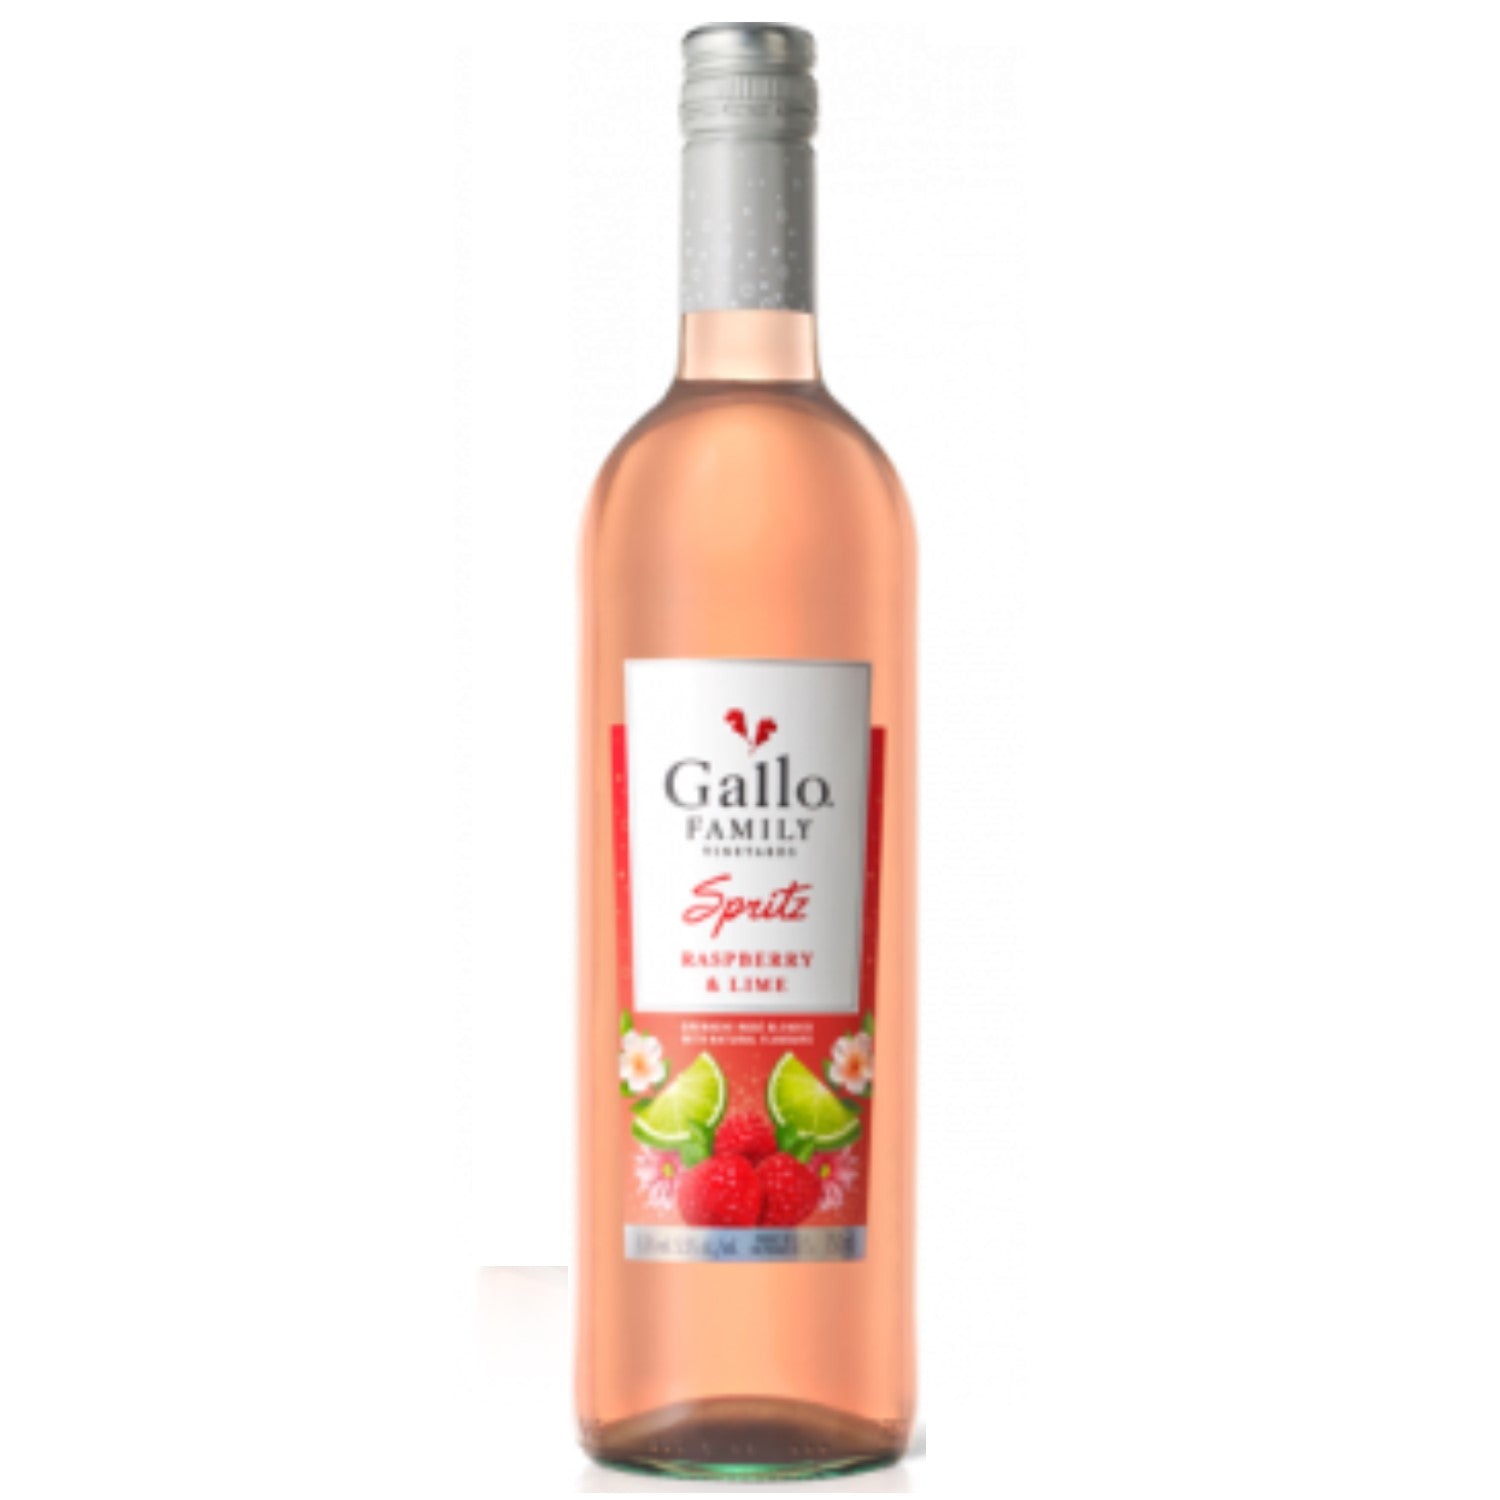 Gallo Spritz Himbeer und Limette Weincocktail Rosé (12 x 0.75l) - Versanel -